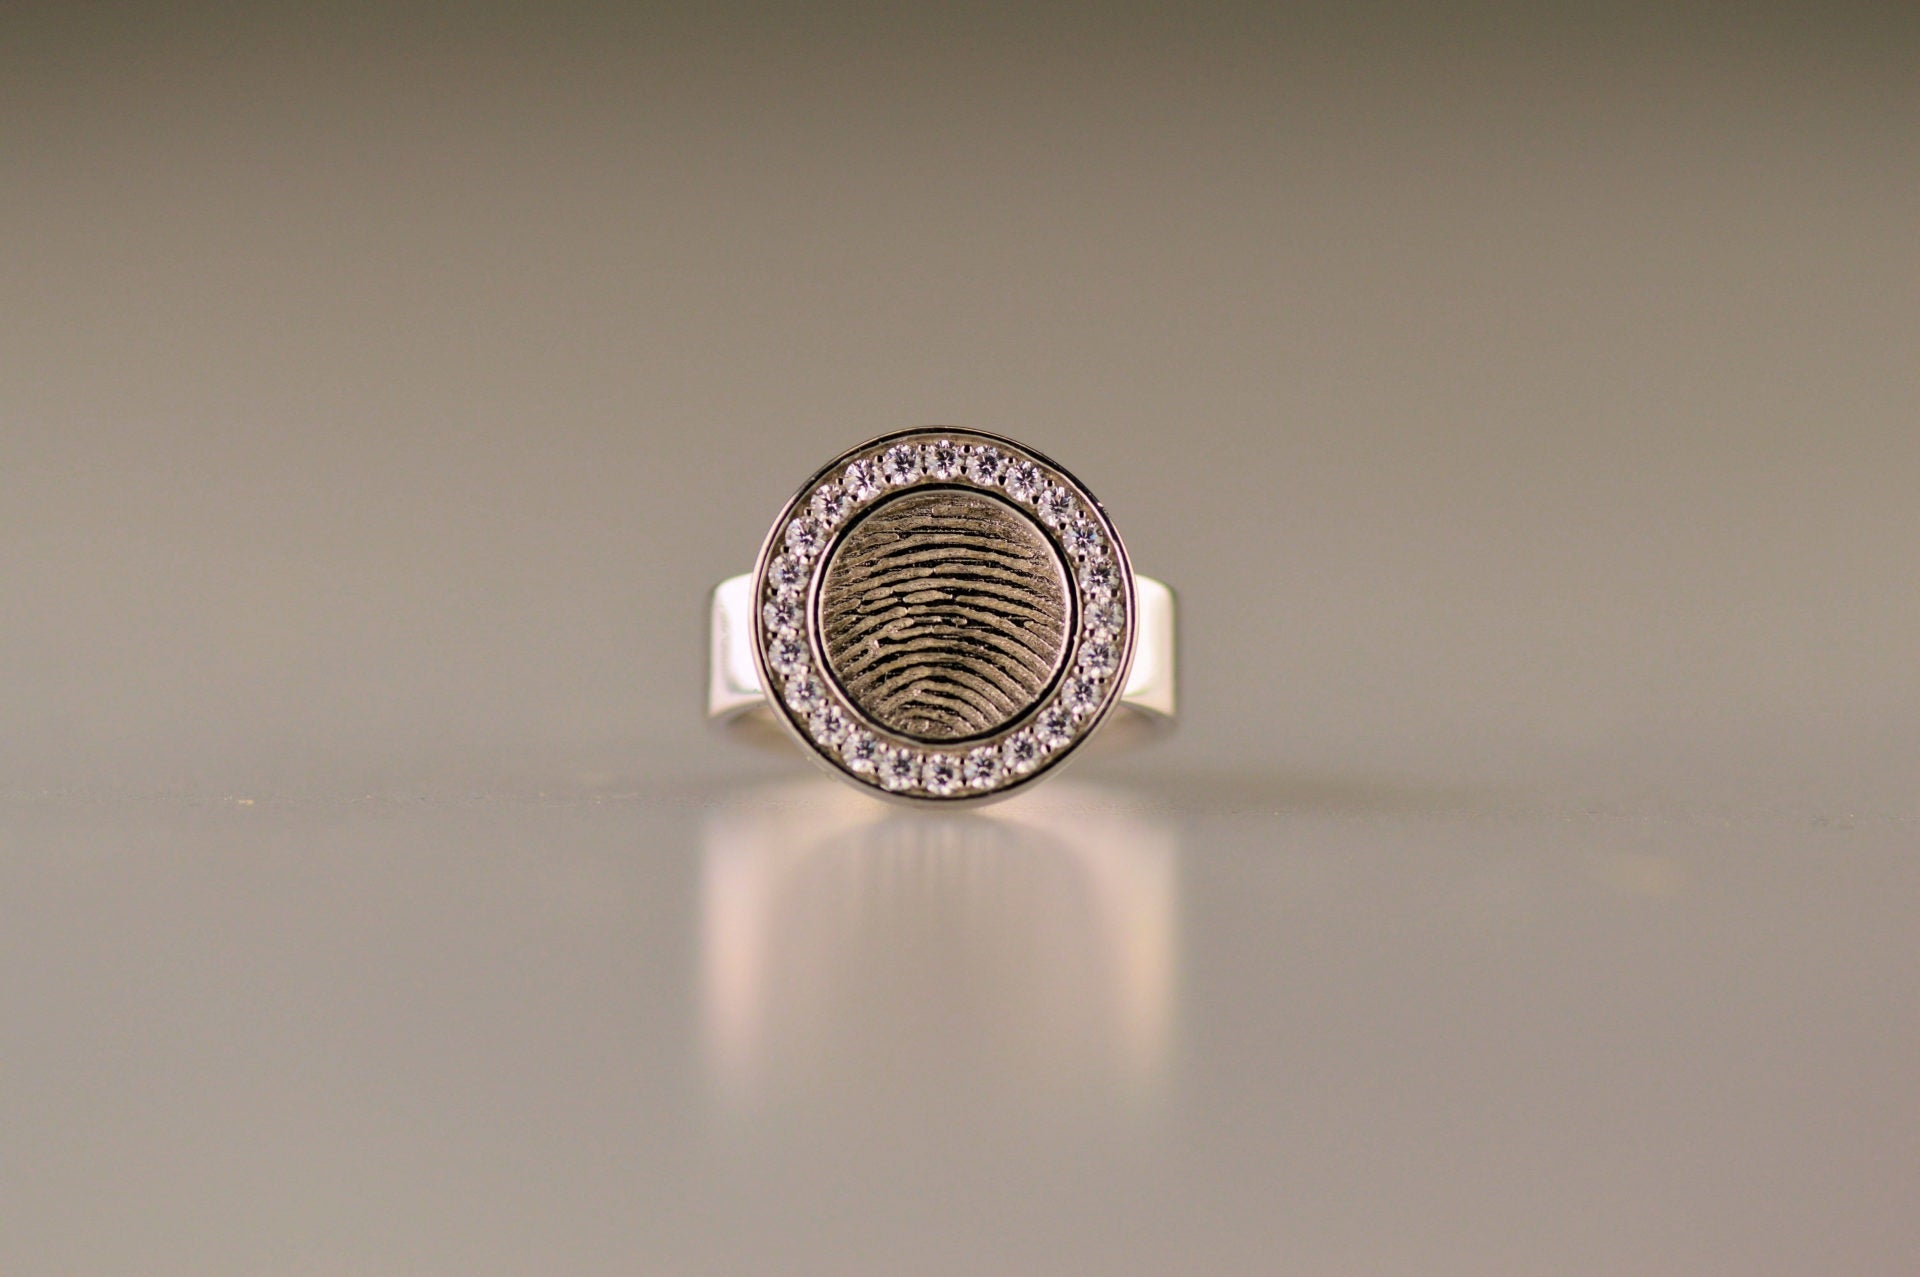 Ring 6 mm breed met een rond vlak aan de bovenzijde voorzien van een vingerafdruk